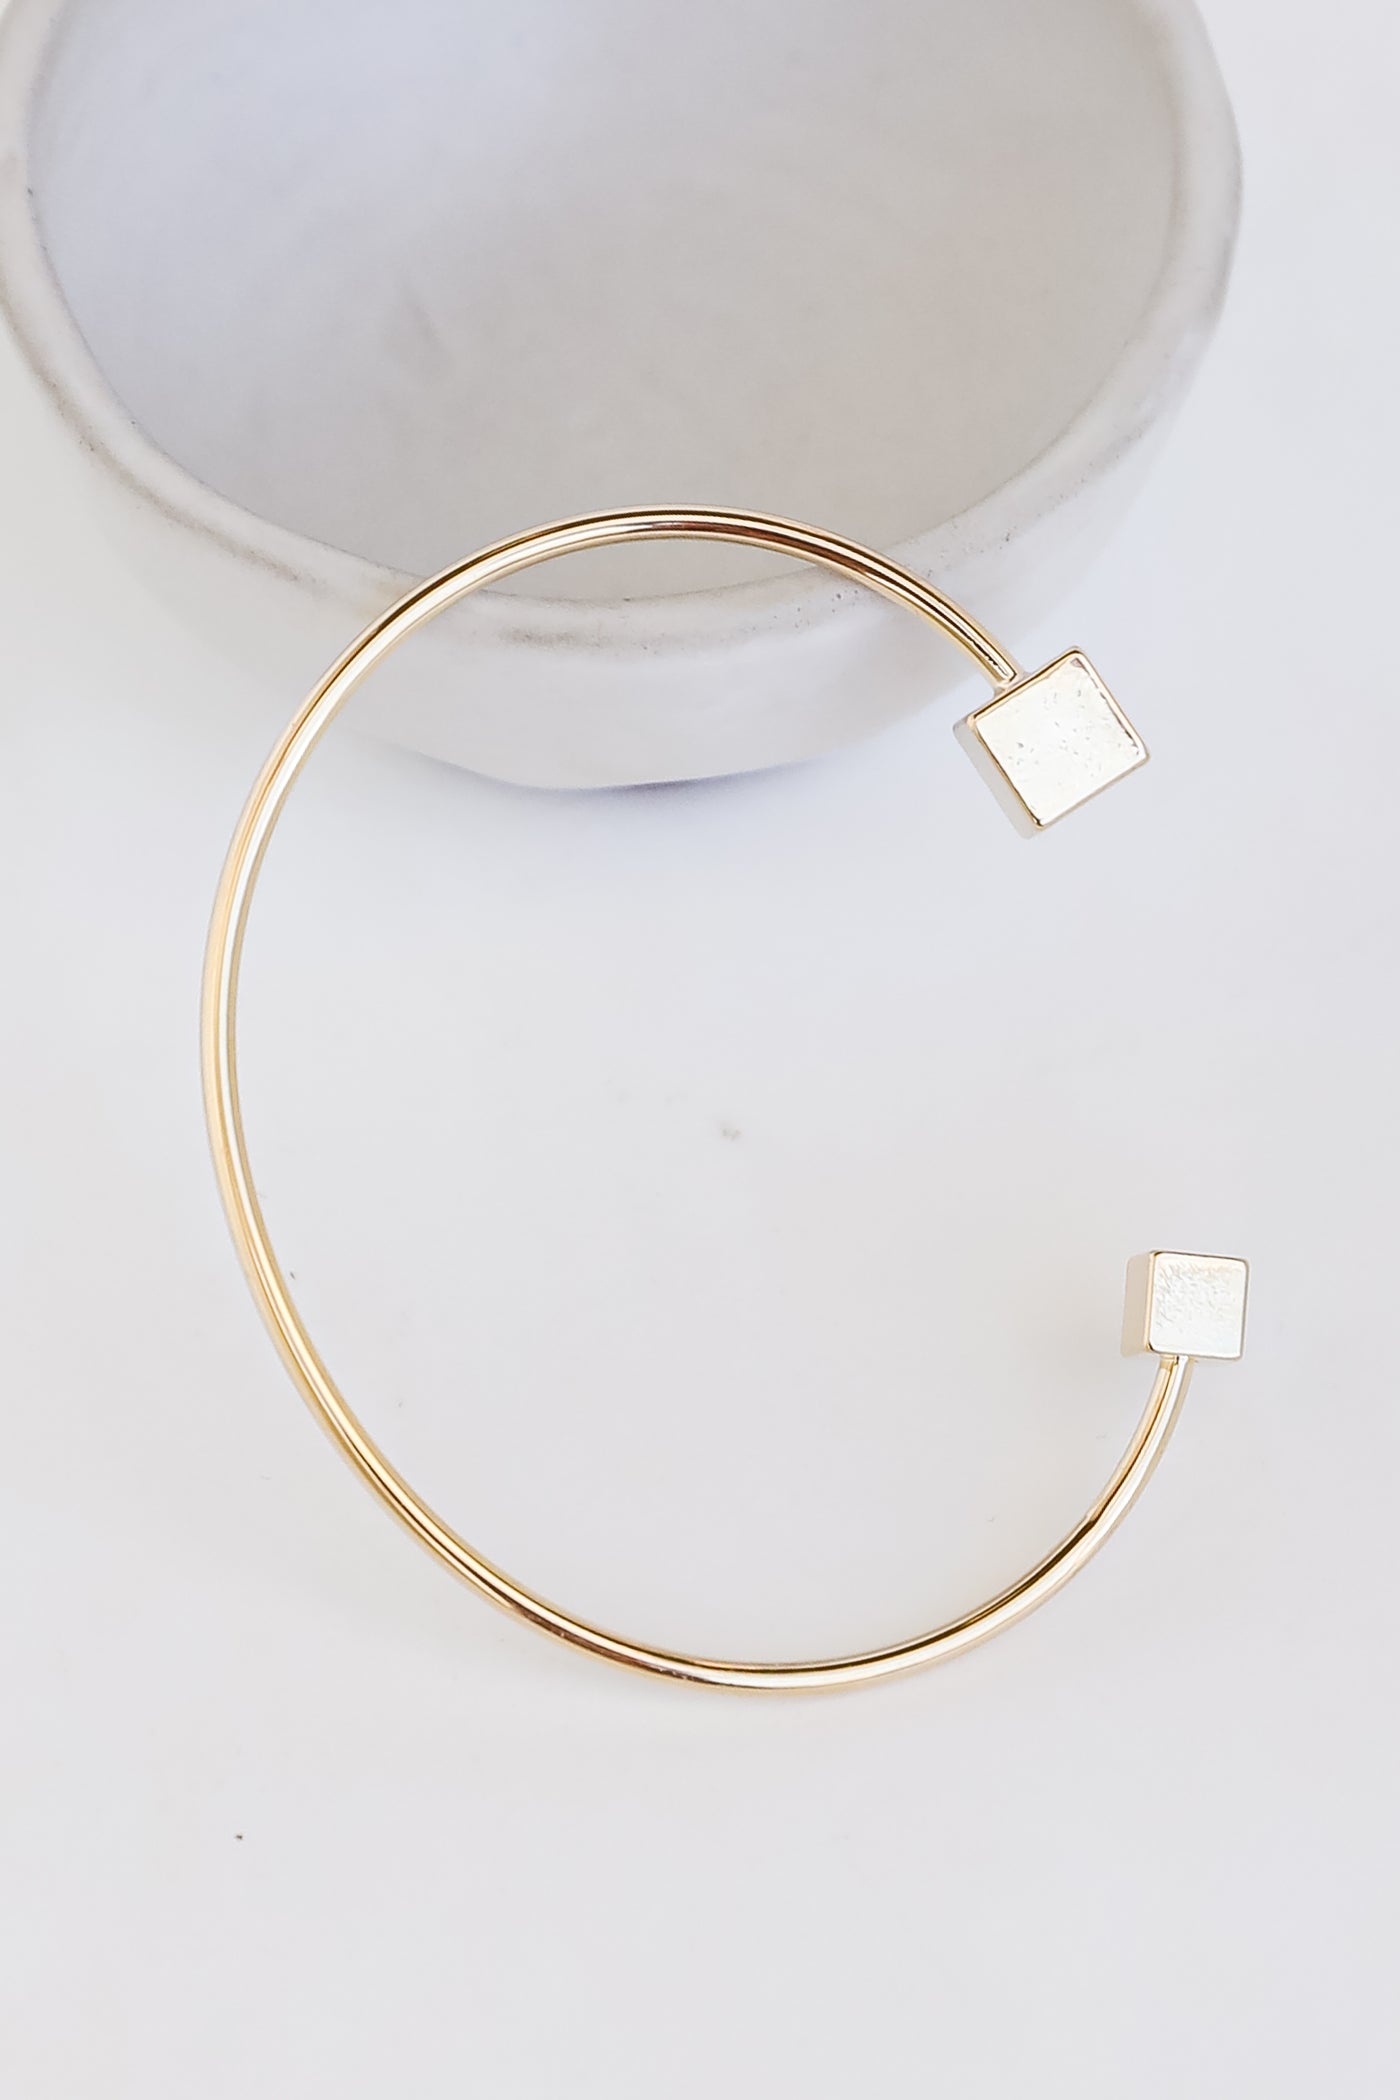 Gold Cuff Bracelet close up